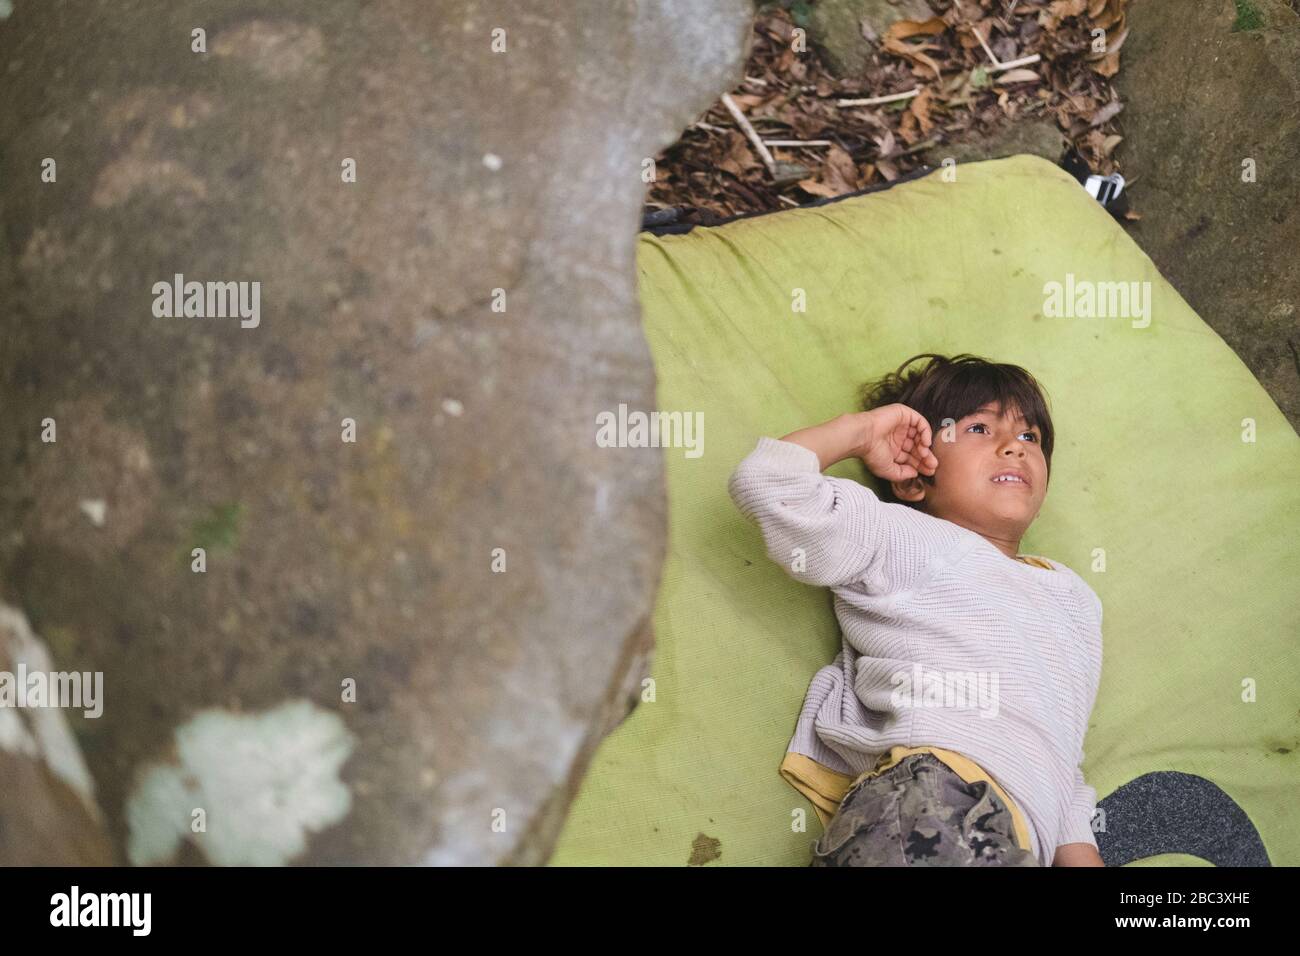 Le petit garçon repose sur un pataillage à côté d'un rocher Banque D'Images